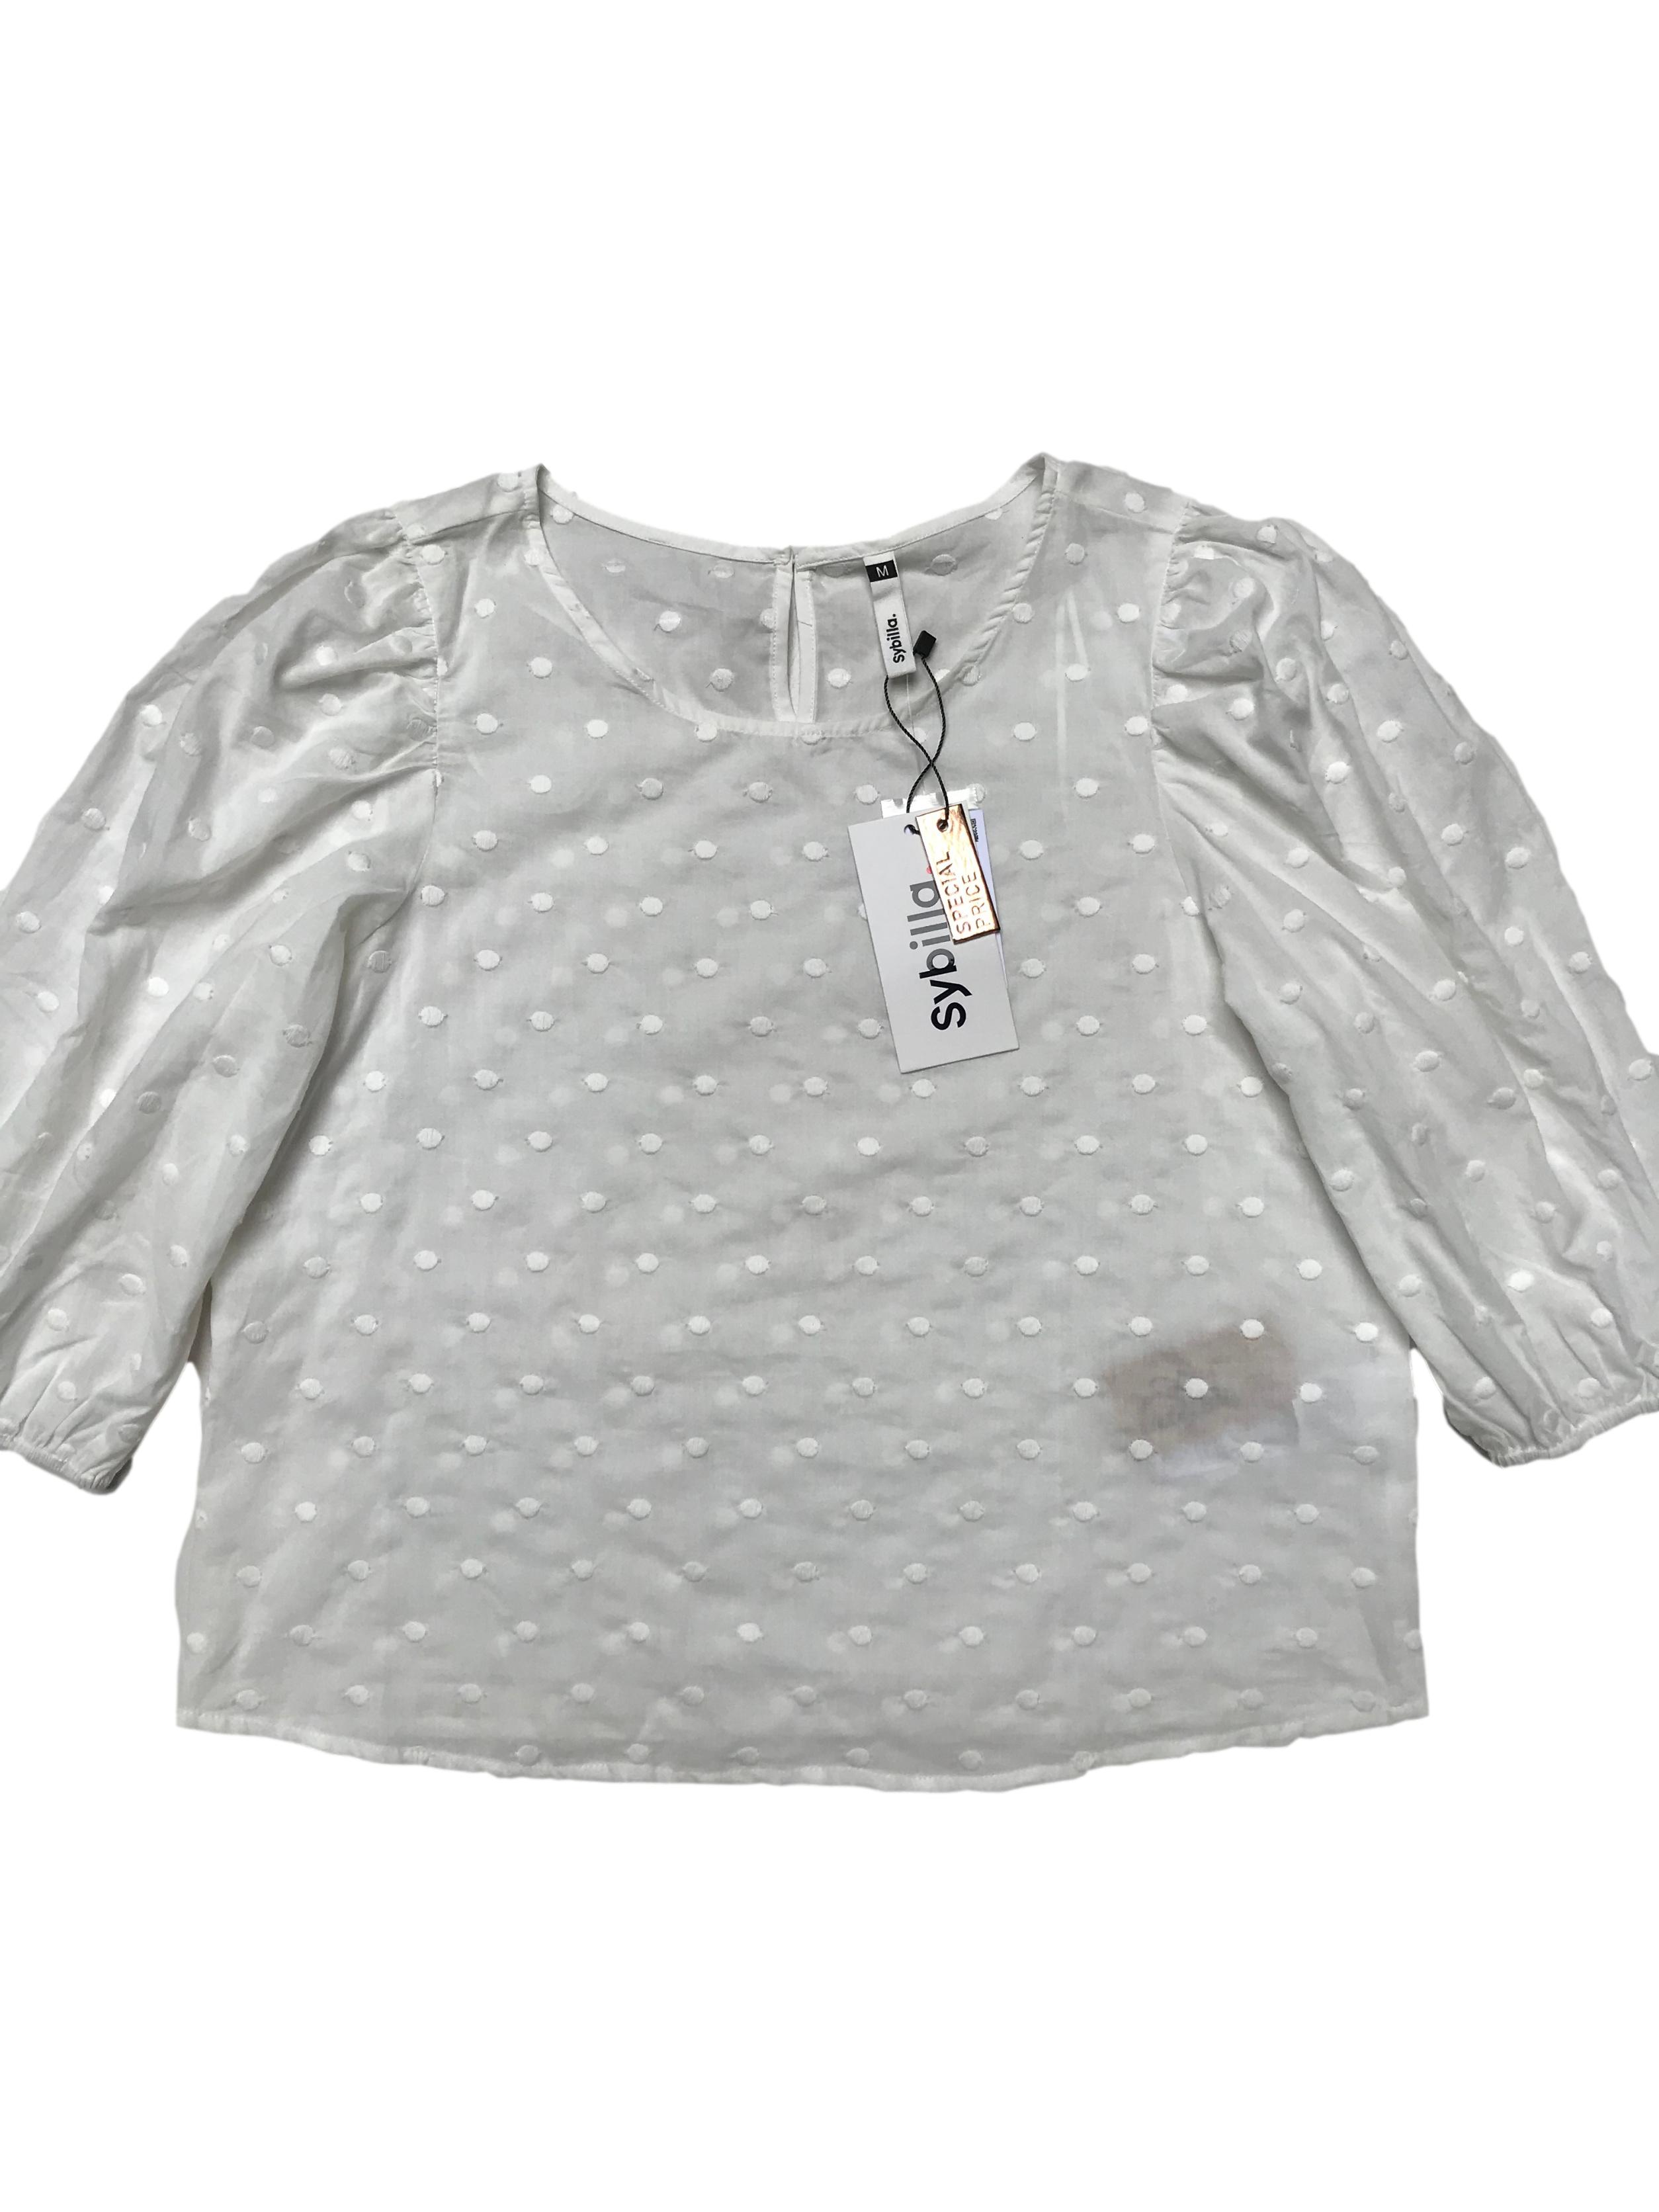 Blusa Sybilla blanca con textura de puntos bordados 100% algodón, mangas 3/4 bombachas con elástico y botón posterior en el cuello. Busto 100cm Largo 51cmNuevo con etiqueta